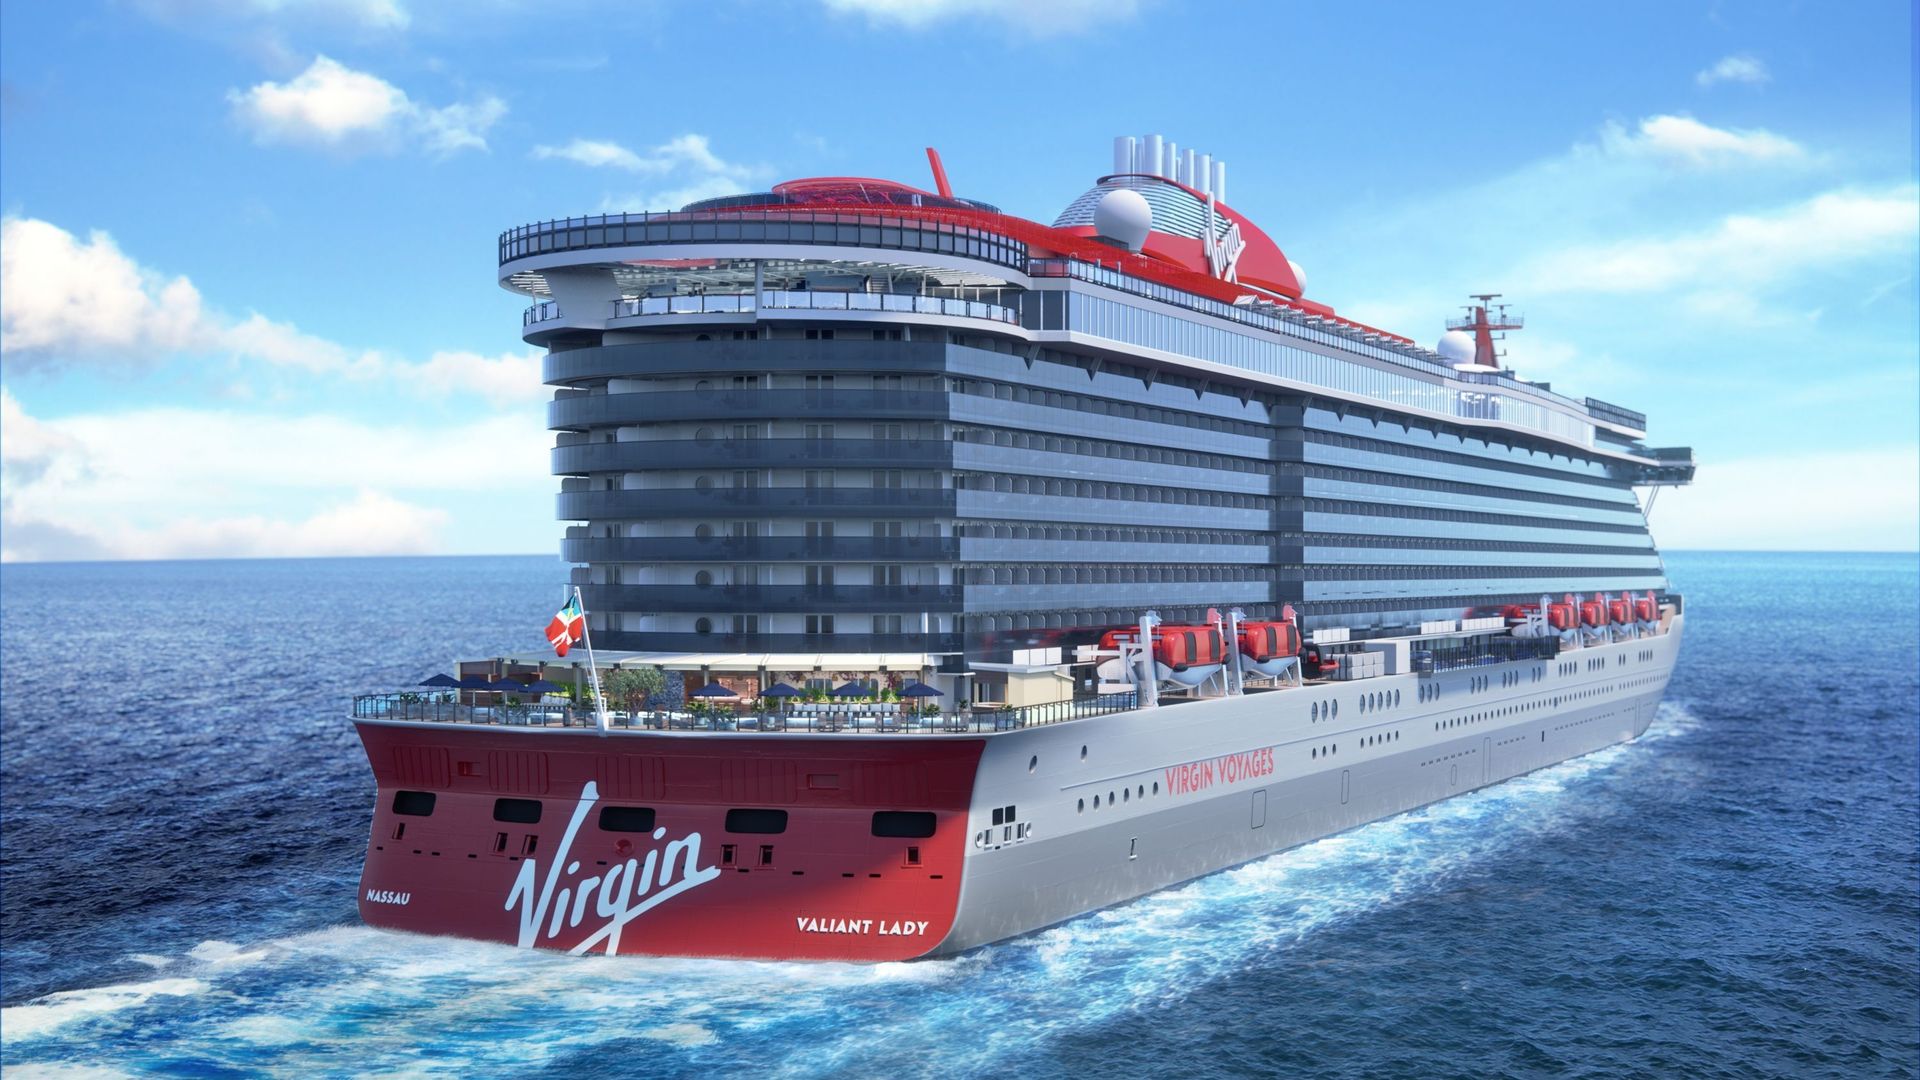 Le deuxième navire de Virgin Voyages voguera sur la Méditerranée en 2021